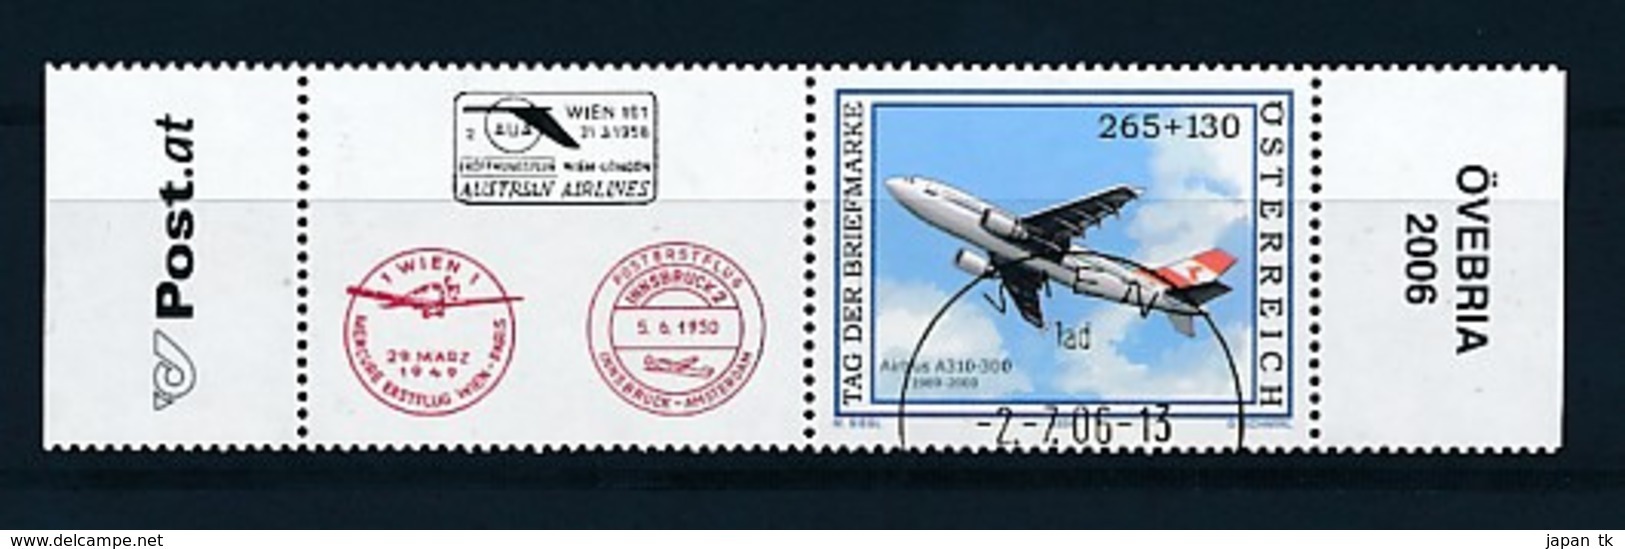 ÖSTERREICH Mi.Nr. 2606 Tag Der Briefmarke - Flugzeug Airbus A310-300 -used - Gebraucht